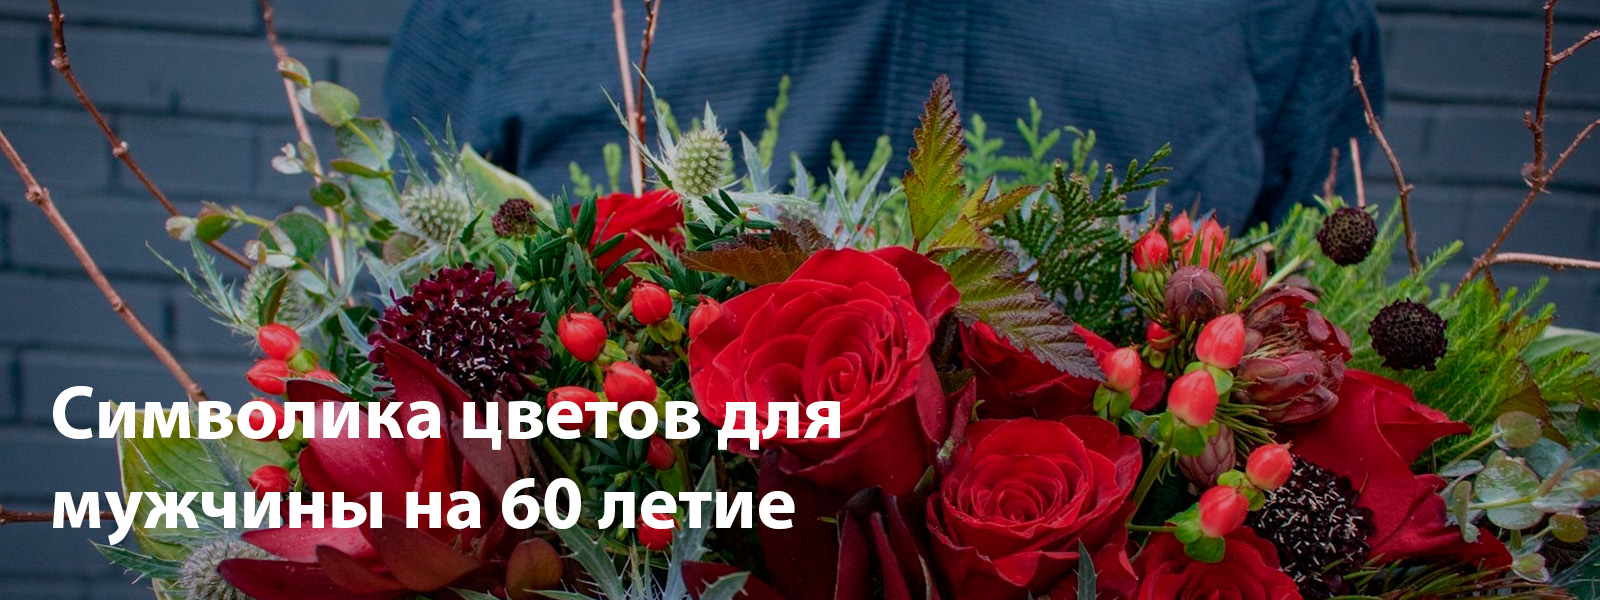 Символика цветов для мужчины на 60 летие